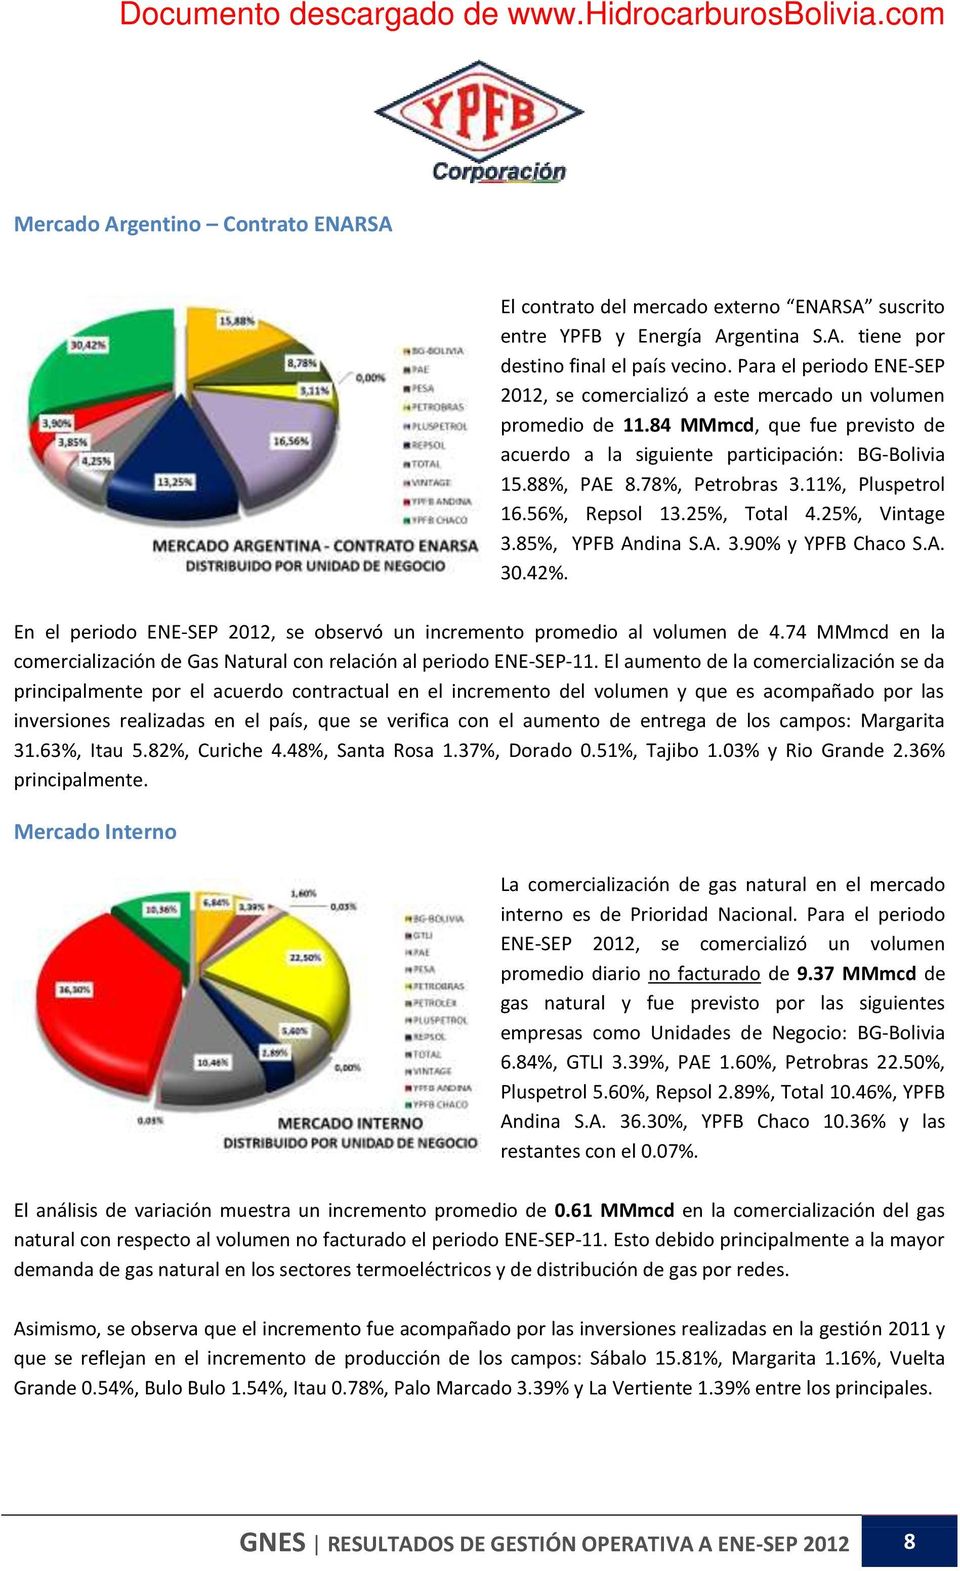 11%, Pluspetrol 16.56%, Repsol 13.25%, Total 4.25%, Vintage 3.85%, YPFB Andina S.A. 3.90% y YPFB Chaco S.A. 30.42%. En el periodo ENE-SEP 2012, se observó un incremento promedio al volumen de 4.